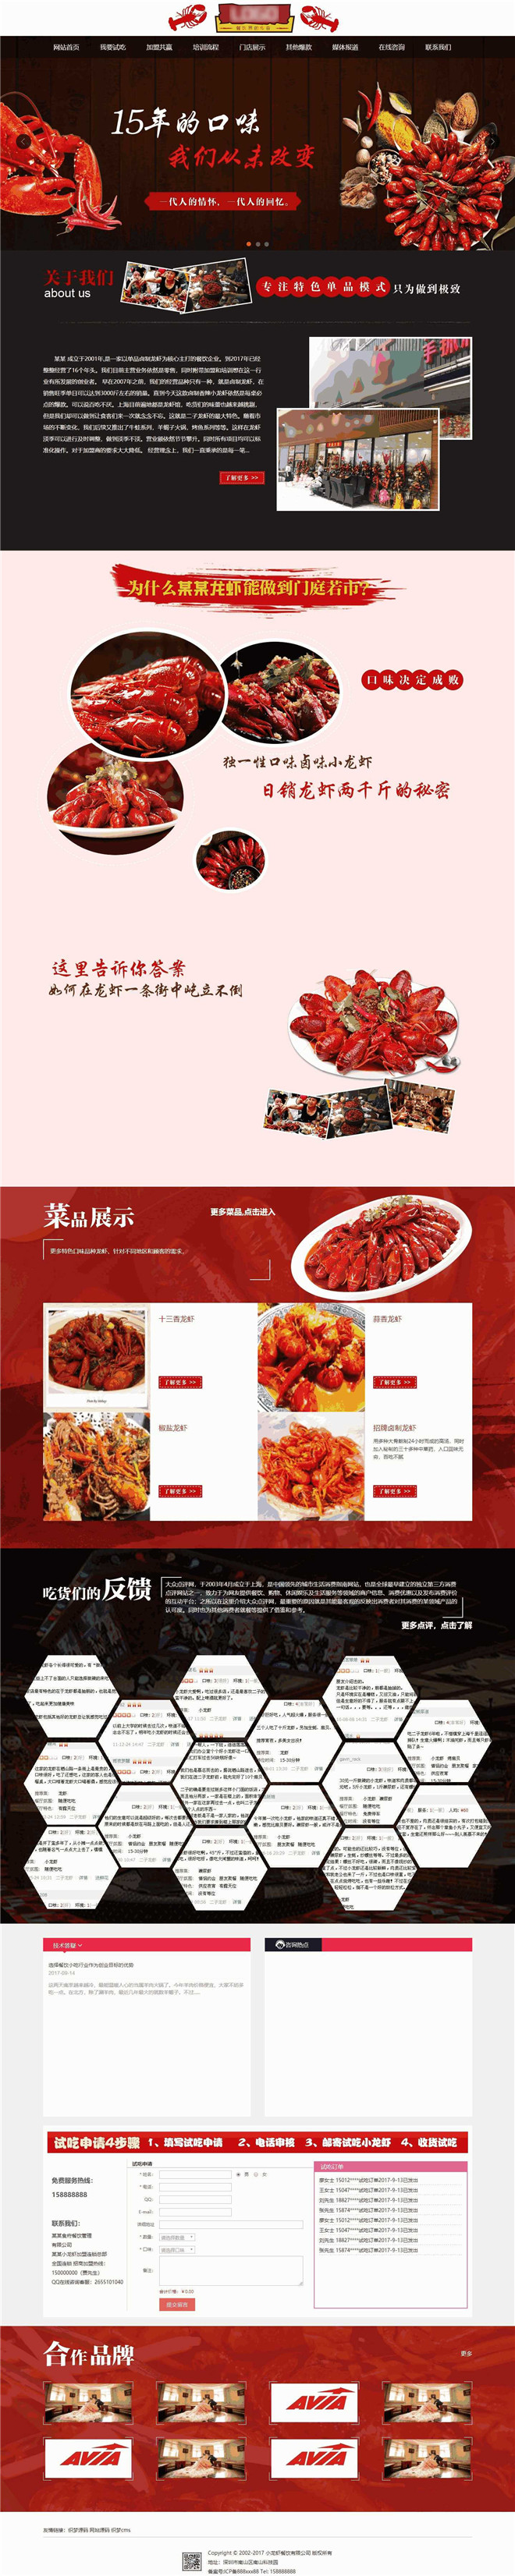 麻辣小龙虾加盟餐饮管理公司企业类网站模板截图